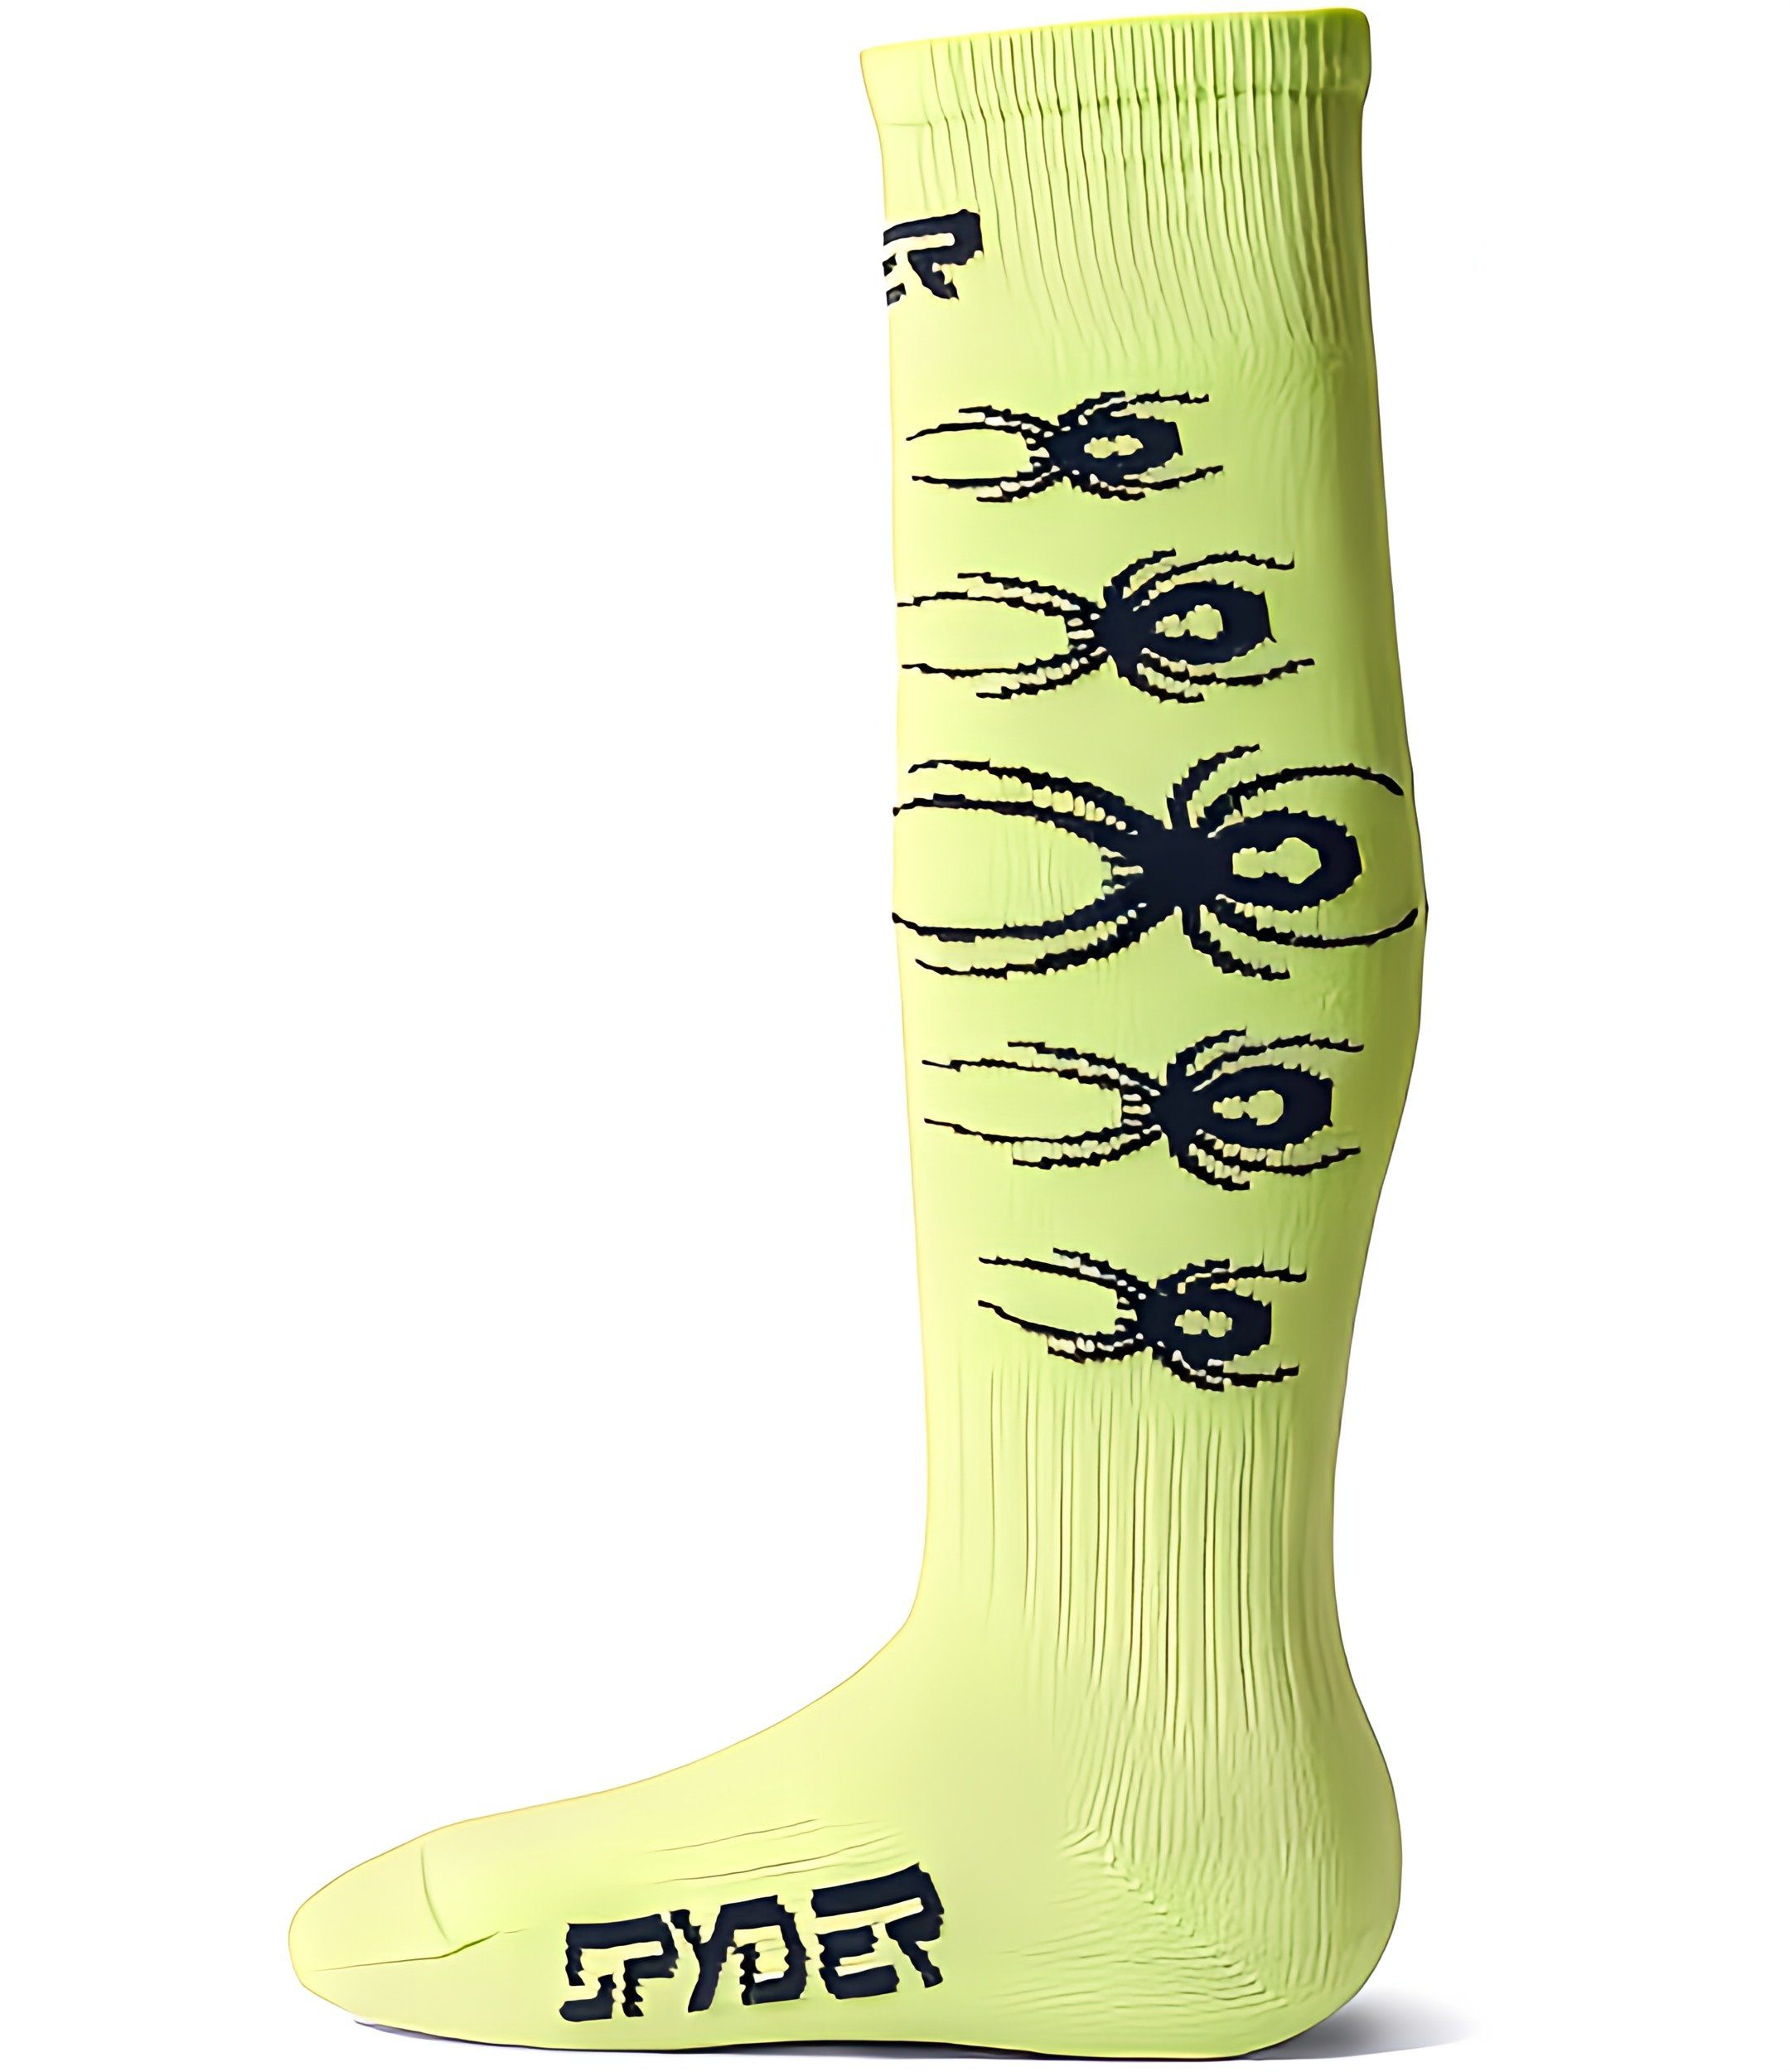 Spyder Skisocken Youth bug liner Ski Socken für Kinder